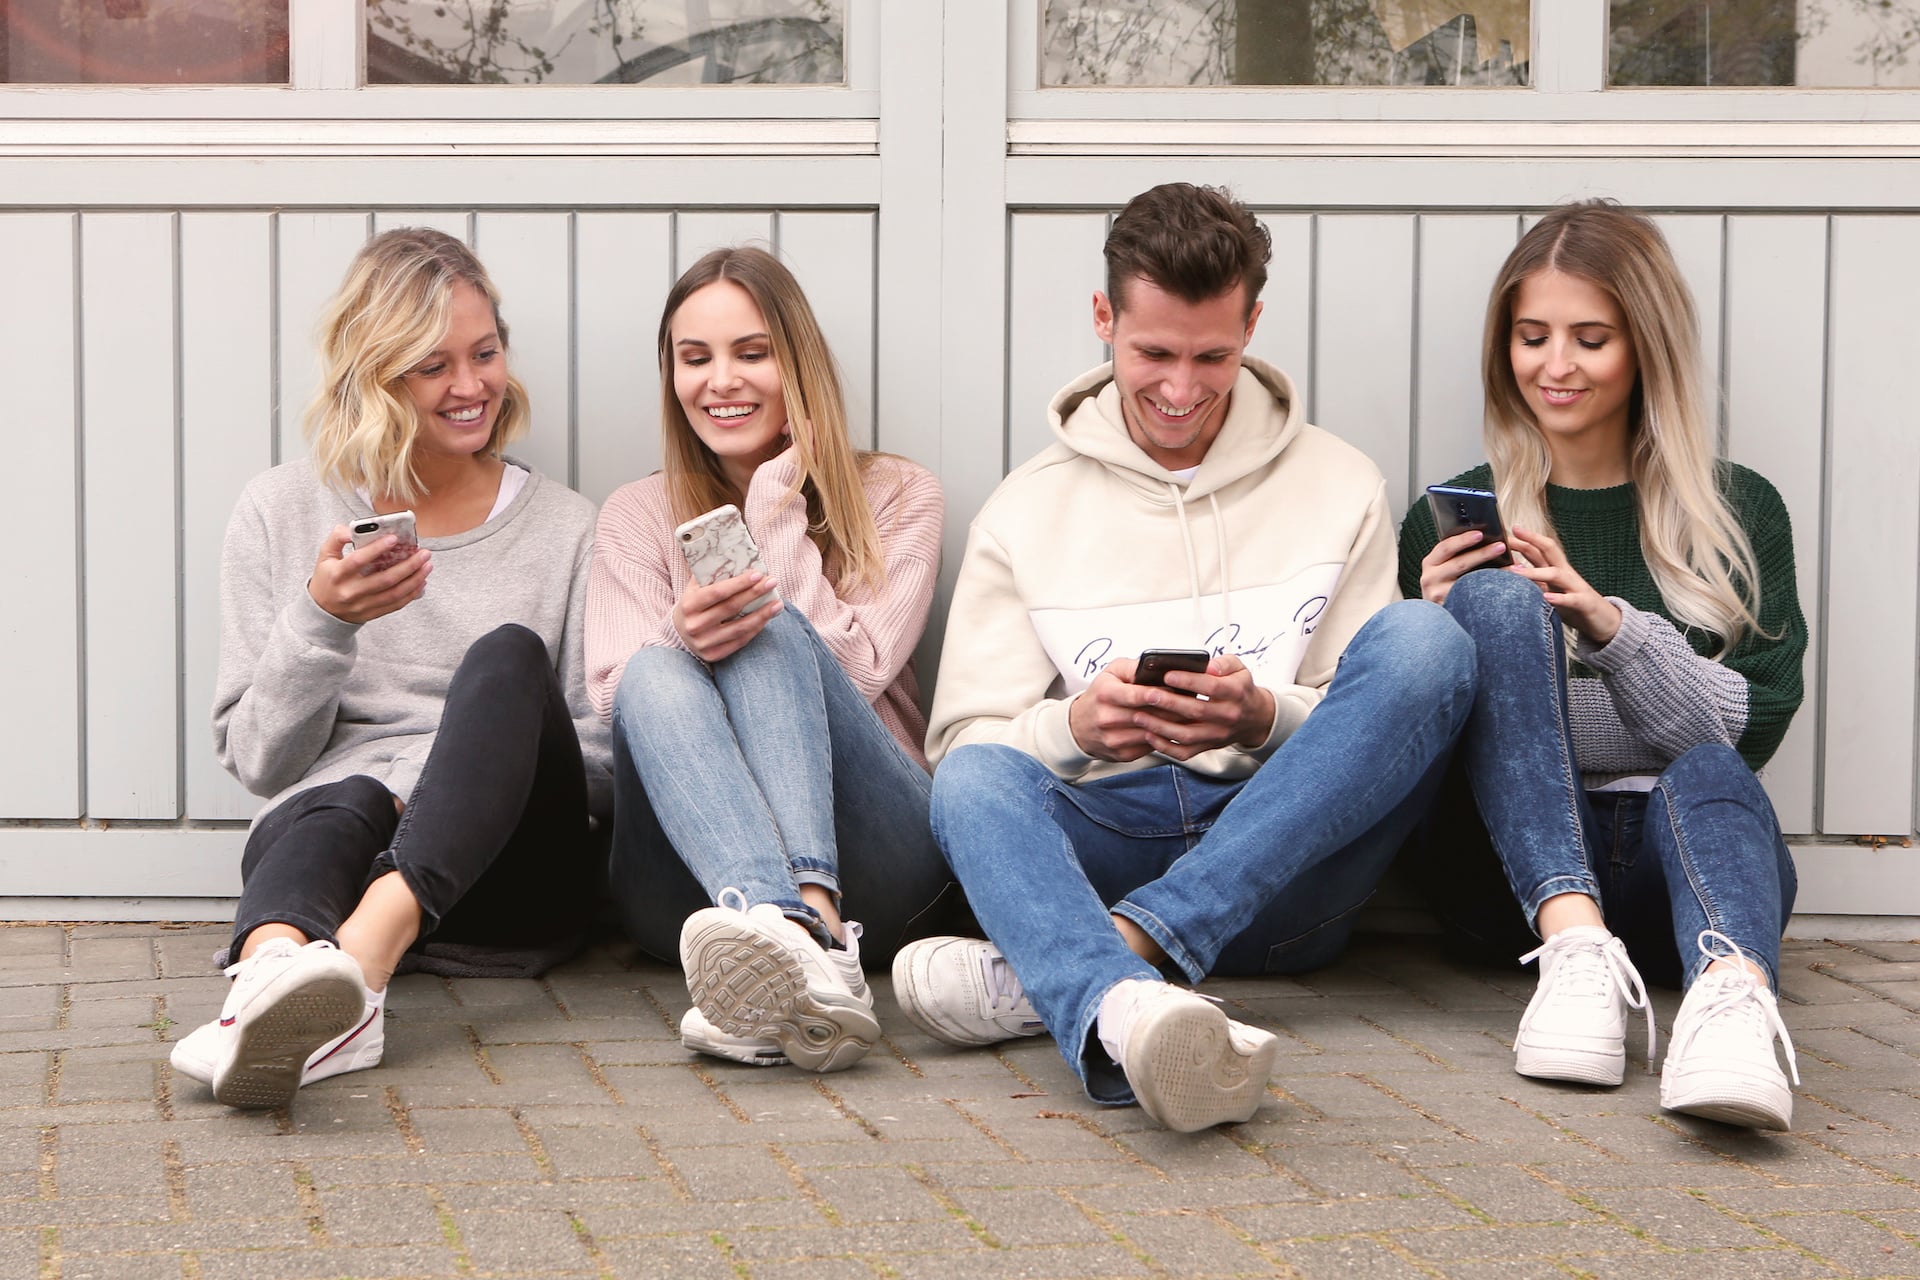 SMS-Marketing für junge Zielgruppen